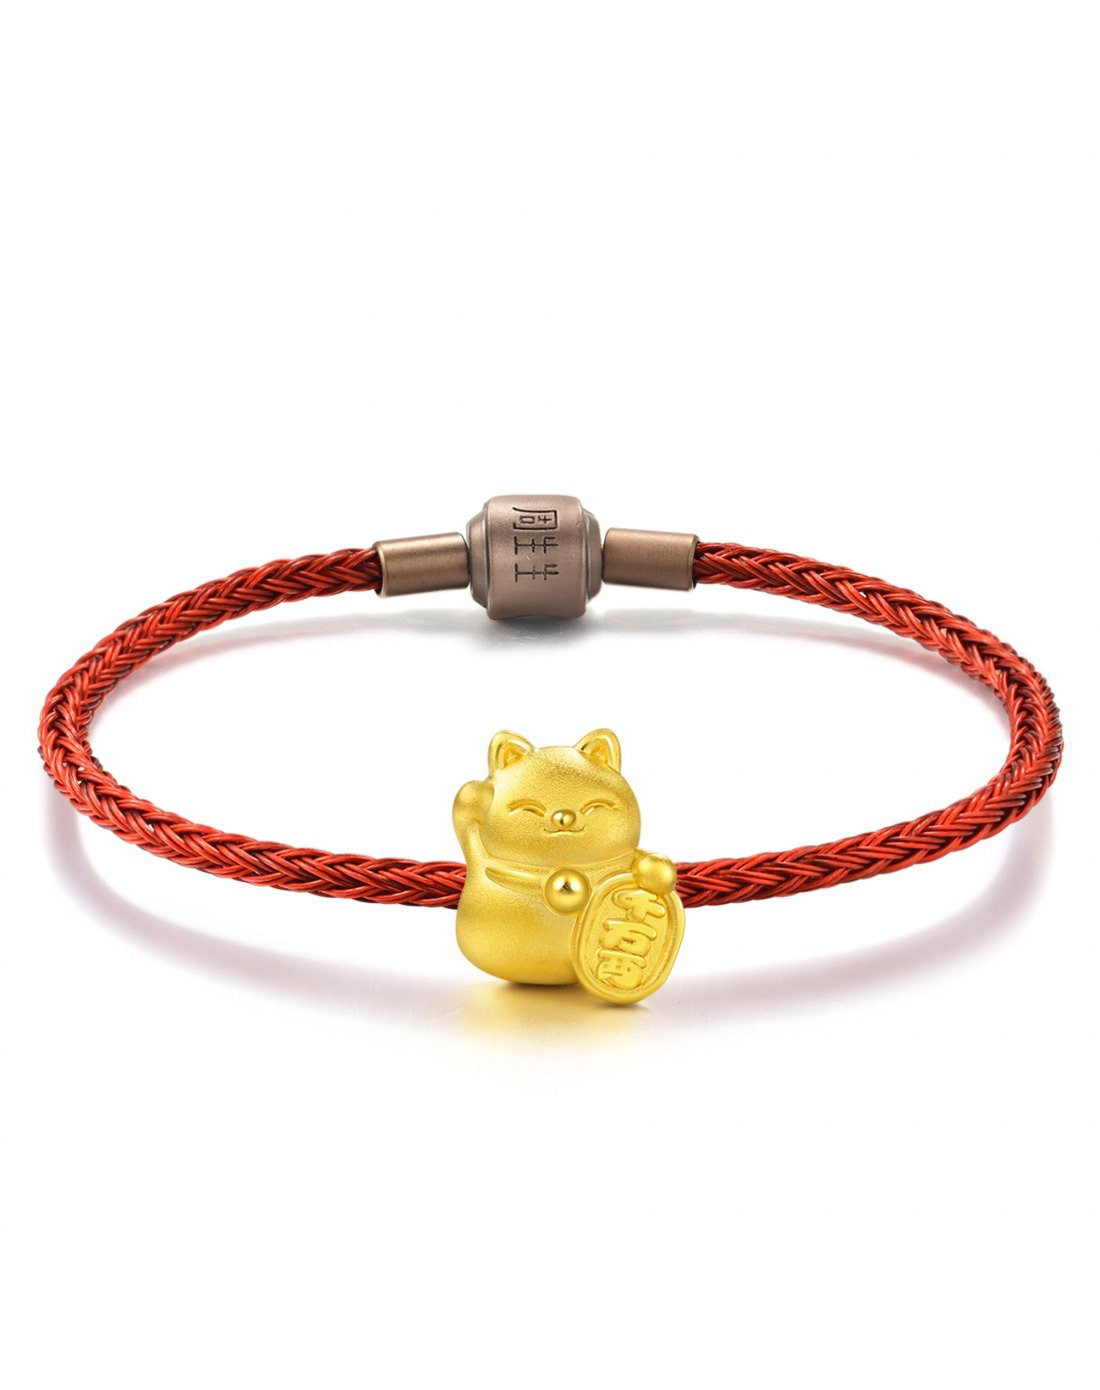 周生生黄金(足金)charme串珠系列招财猫转运珠(送17厘米不锈钢红绳)